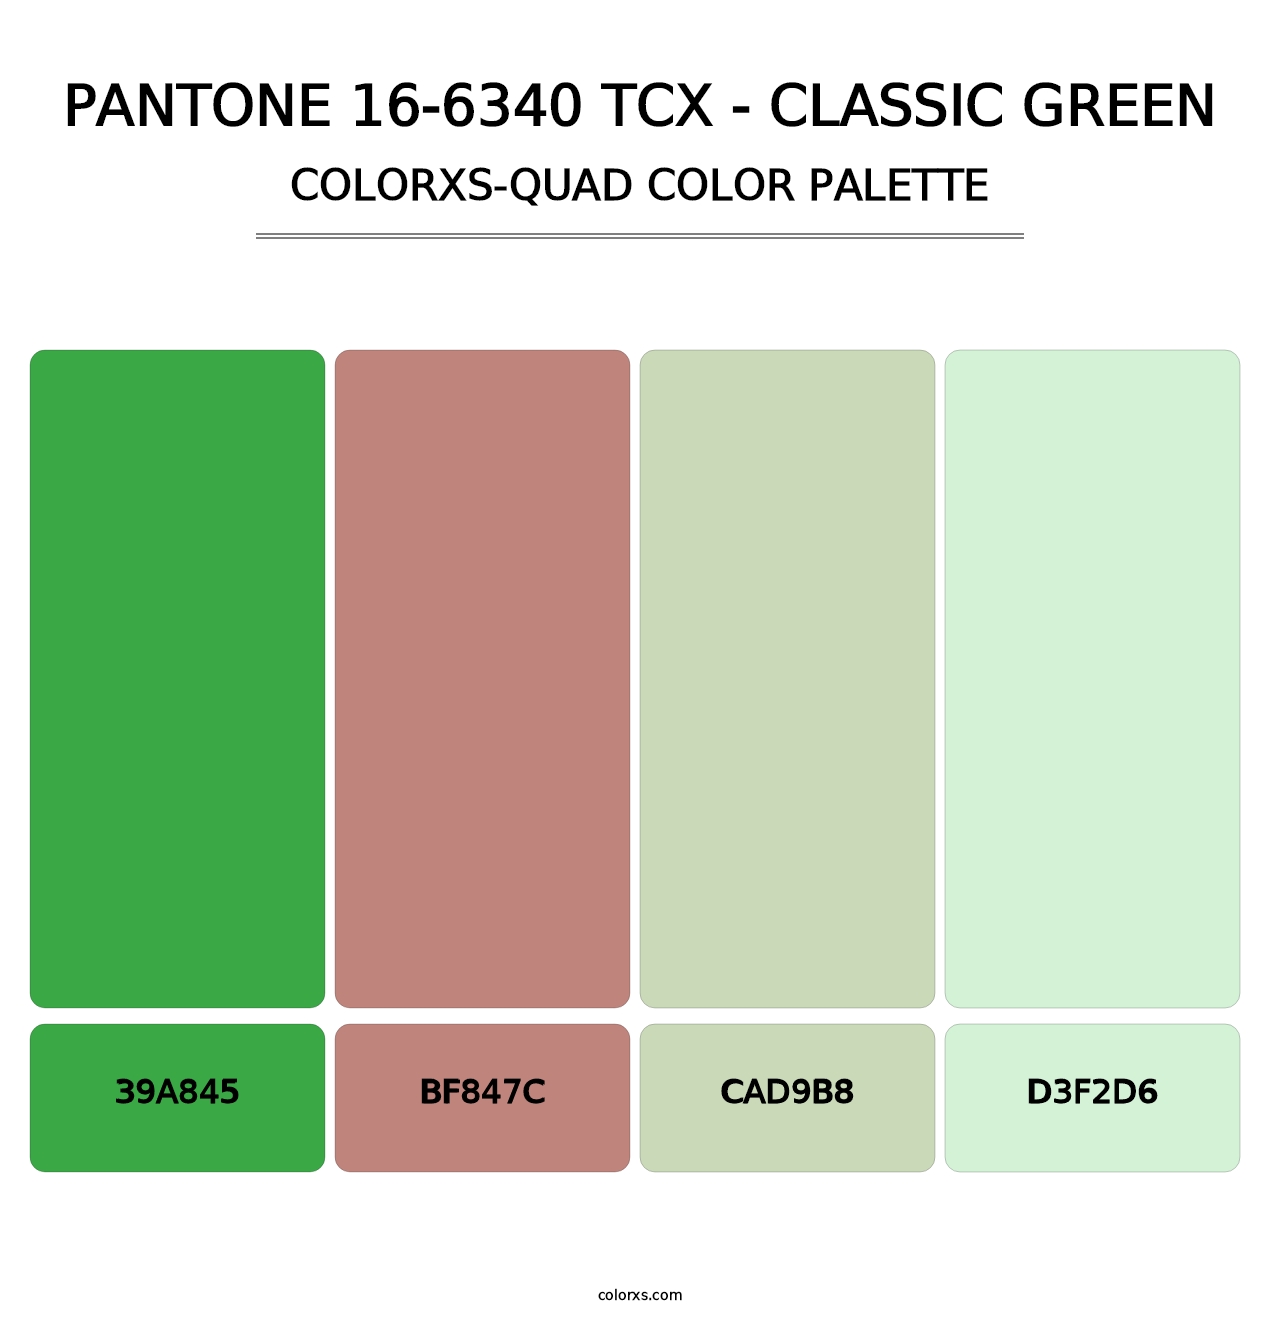 PANTONE 16-6340 TCX - Classic Green - Colorxs Quad Palette